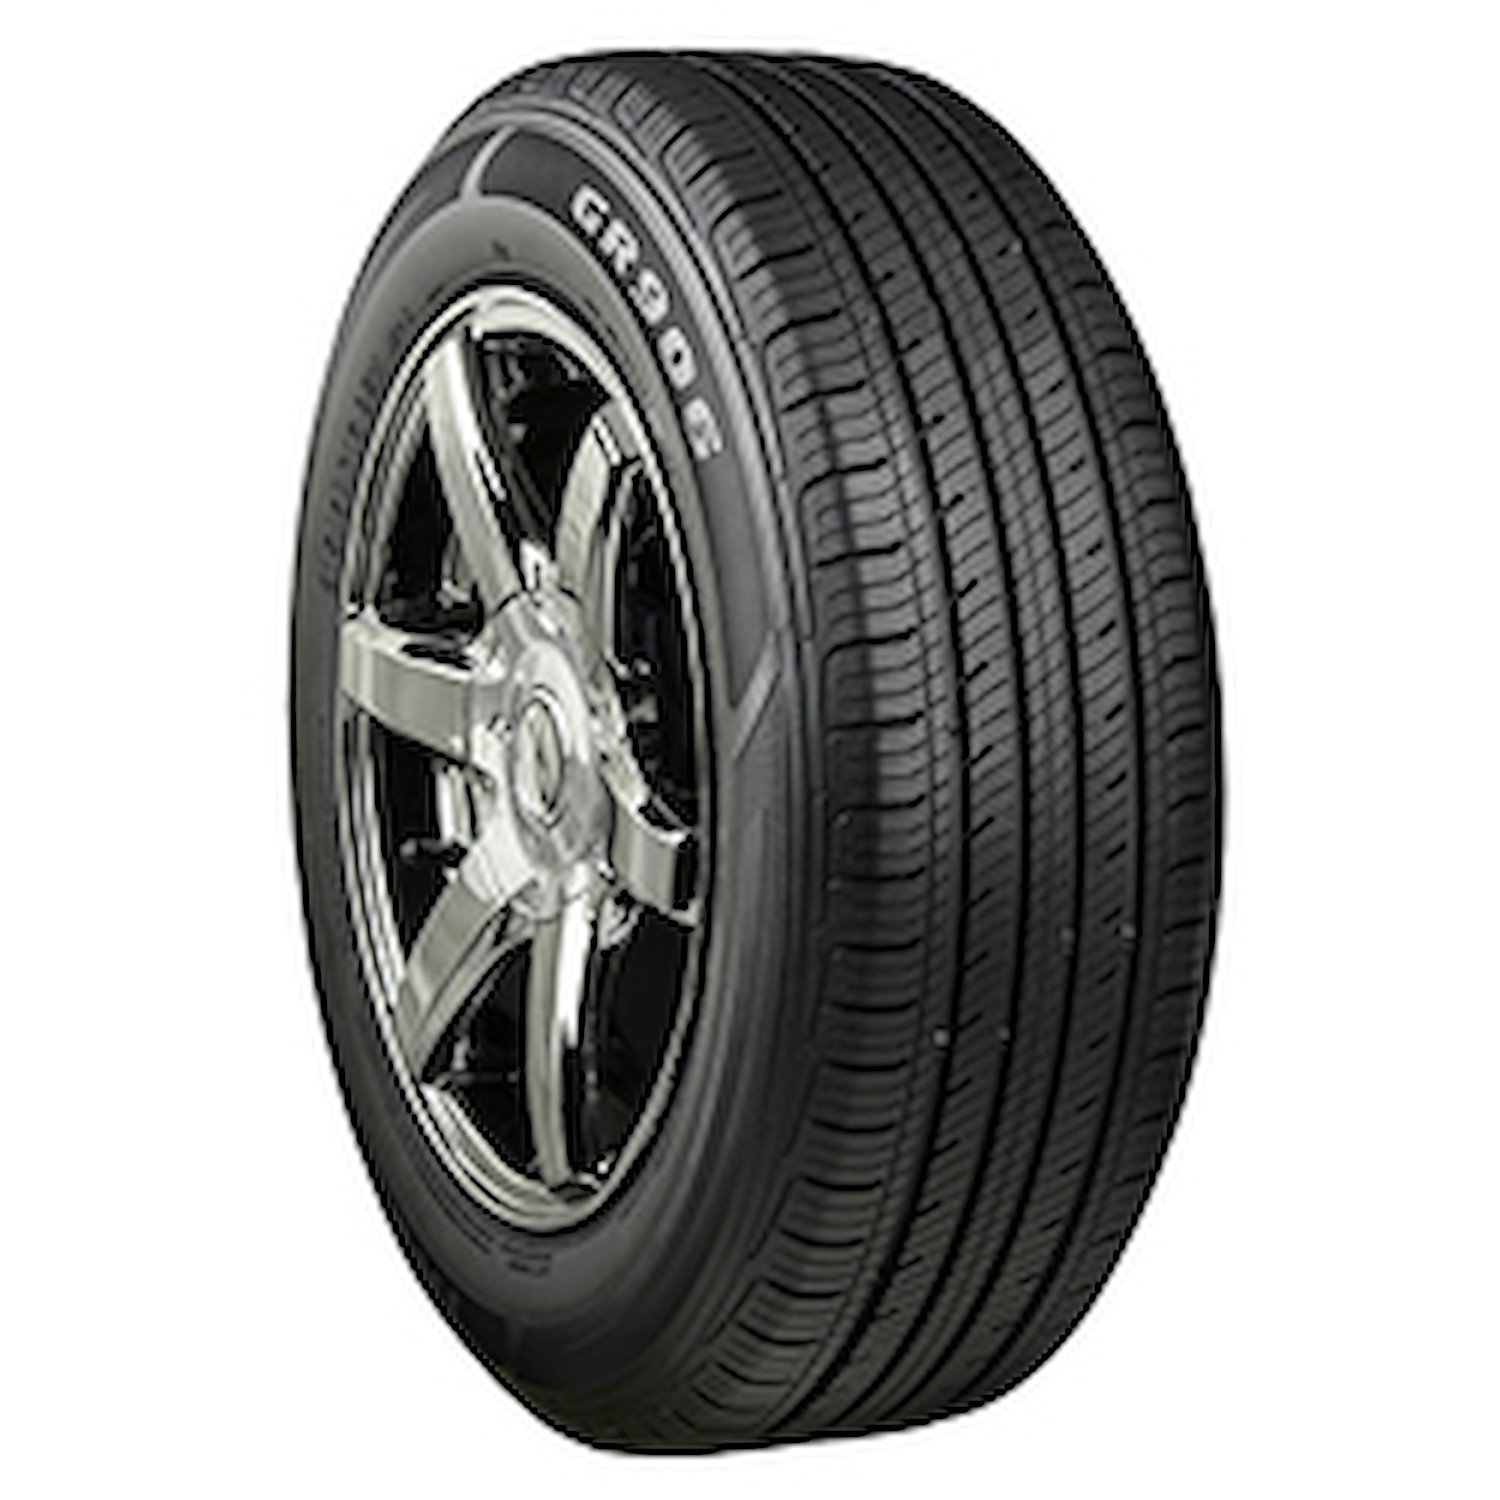 GR906 Tire, 205/65R15 94H